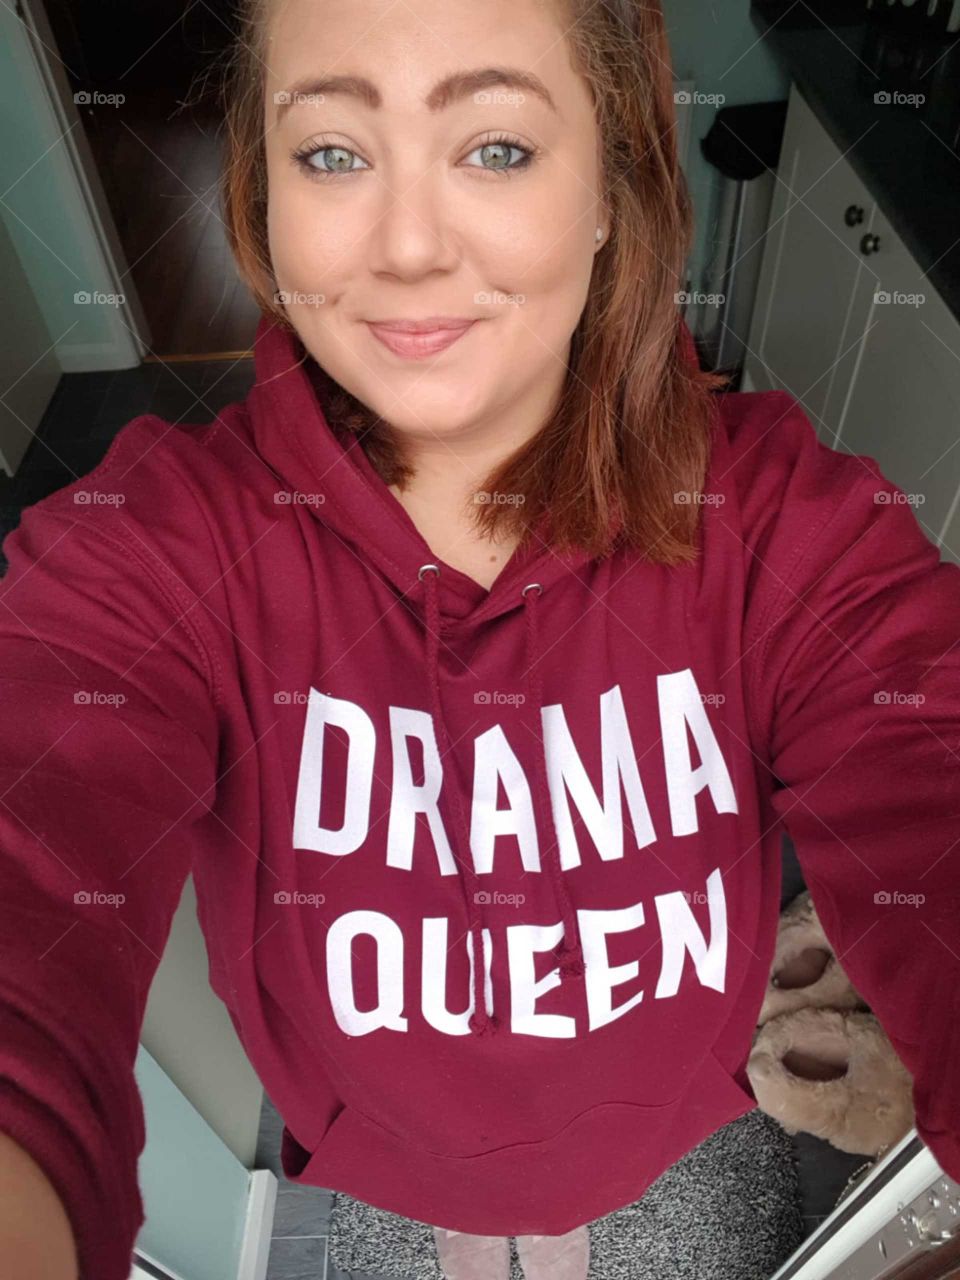 Drama queen selfie